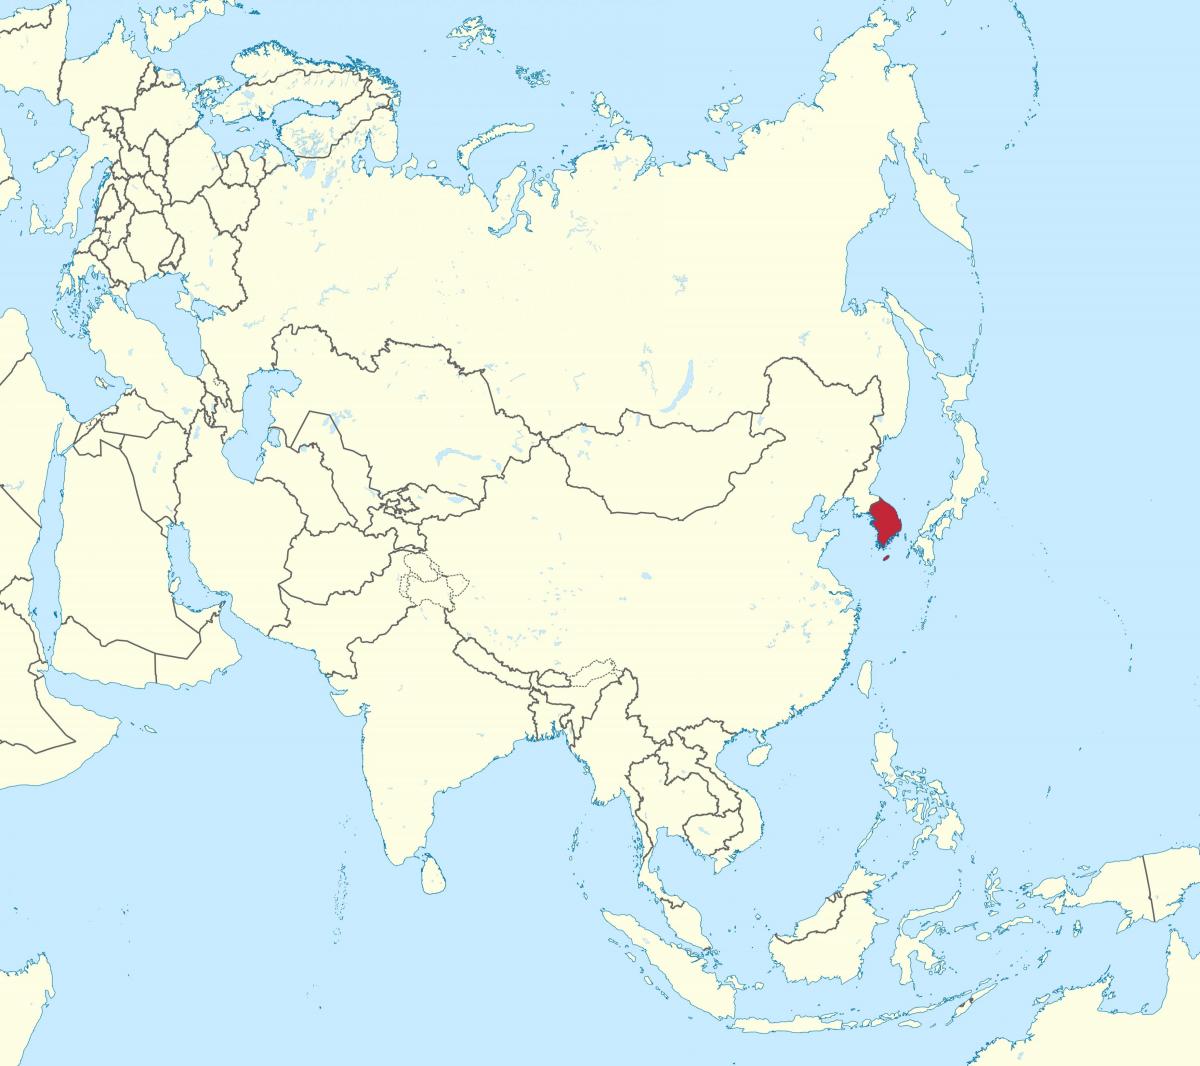 Localização da Coreia do Sul (ROK) no mapa da Ásia